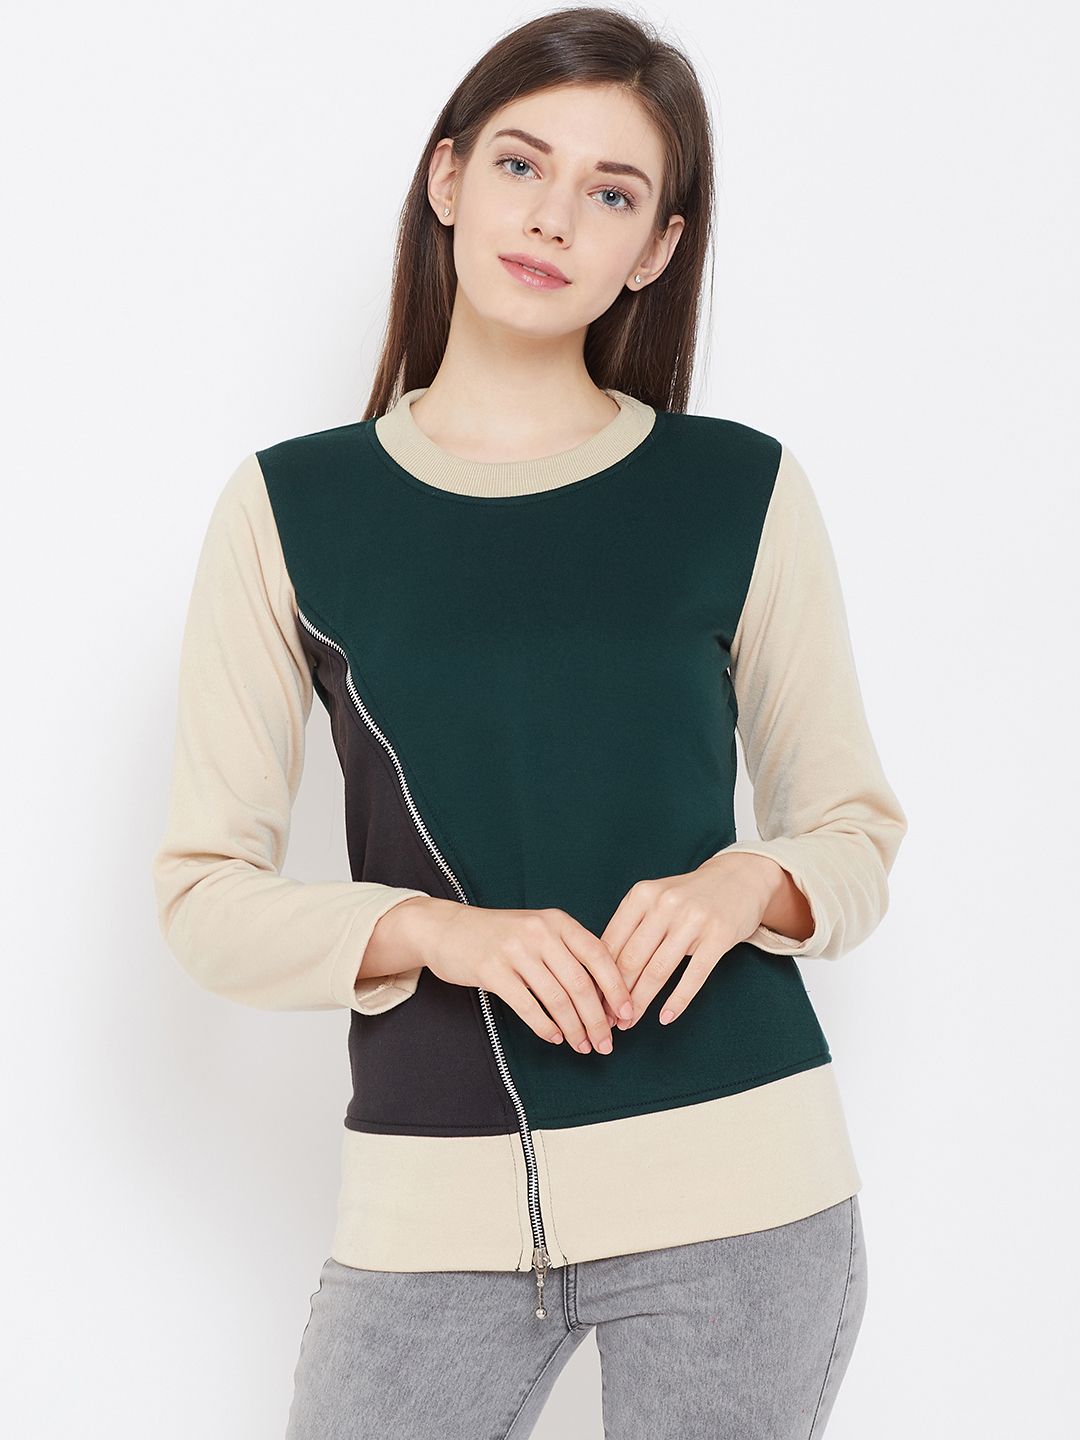 Belle Fille Women Green & Beige Colourblocked Hooded Sweatshirt Price in India